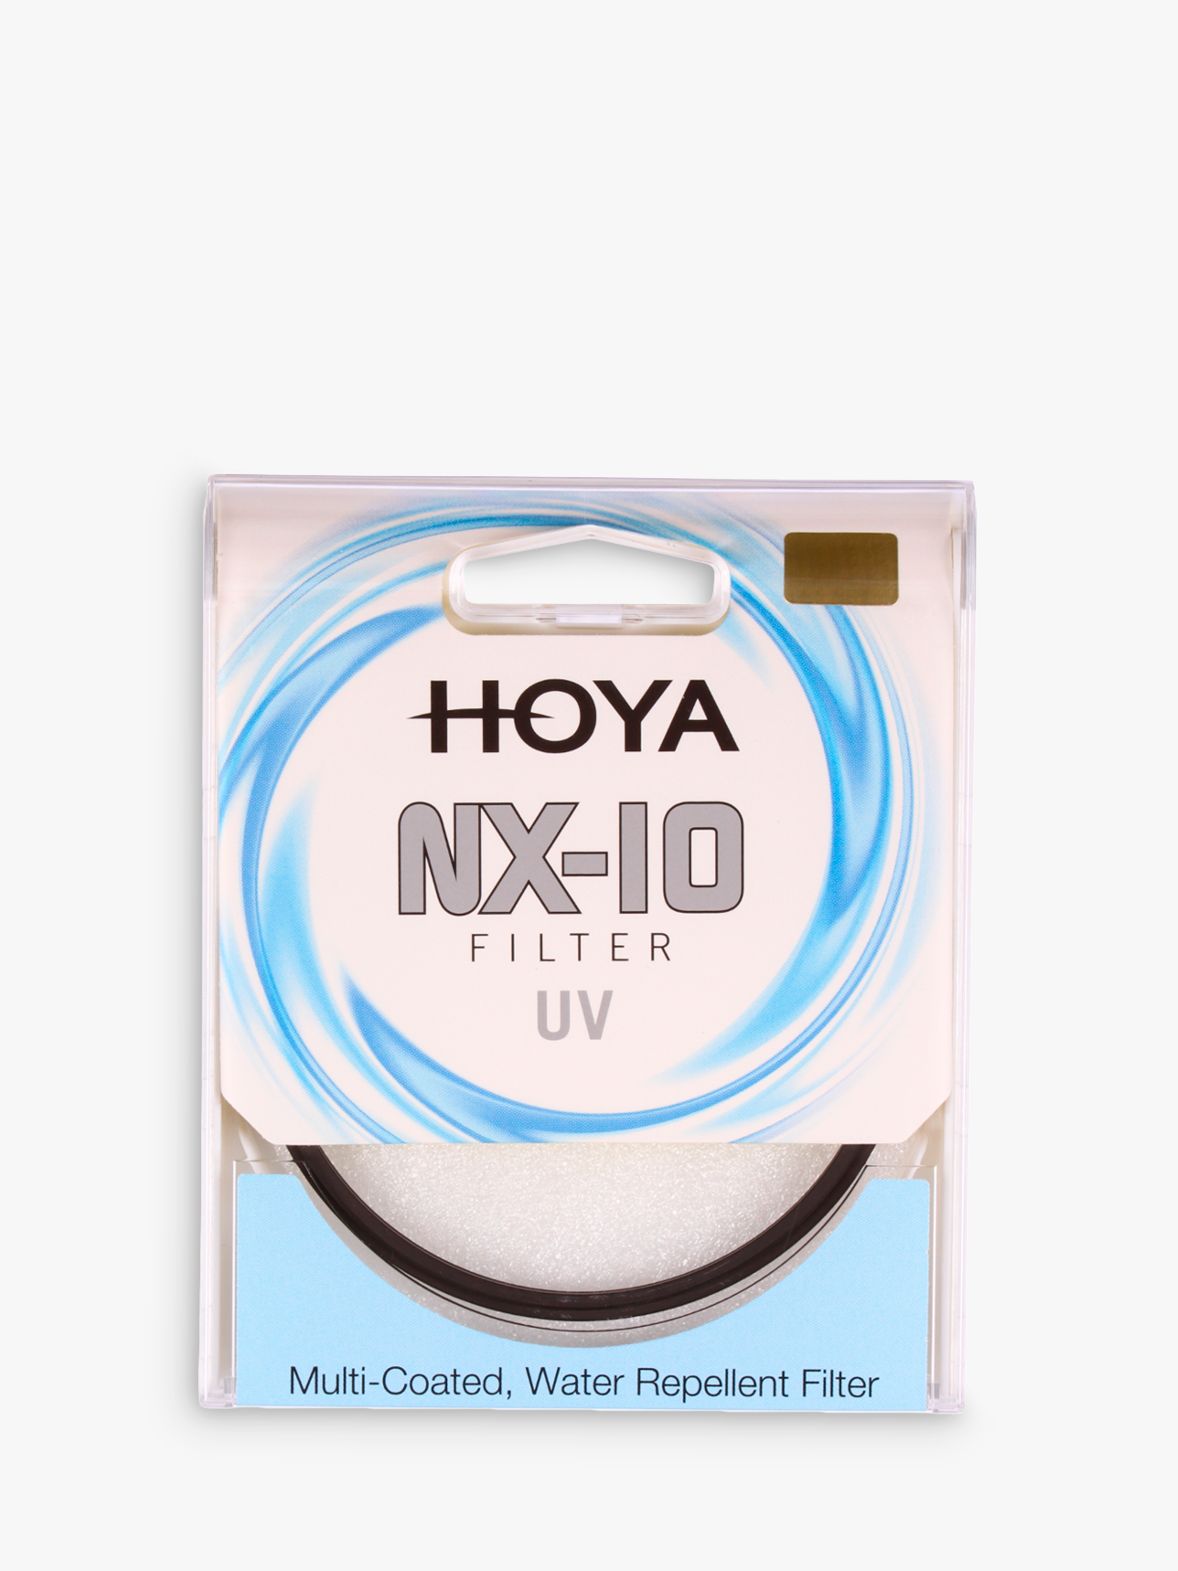 HOYA NX-10 UV Lens Filter, 58mm